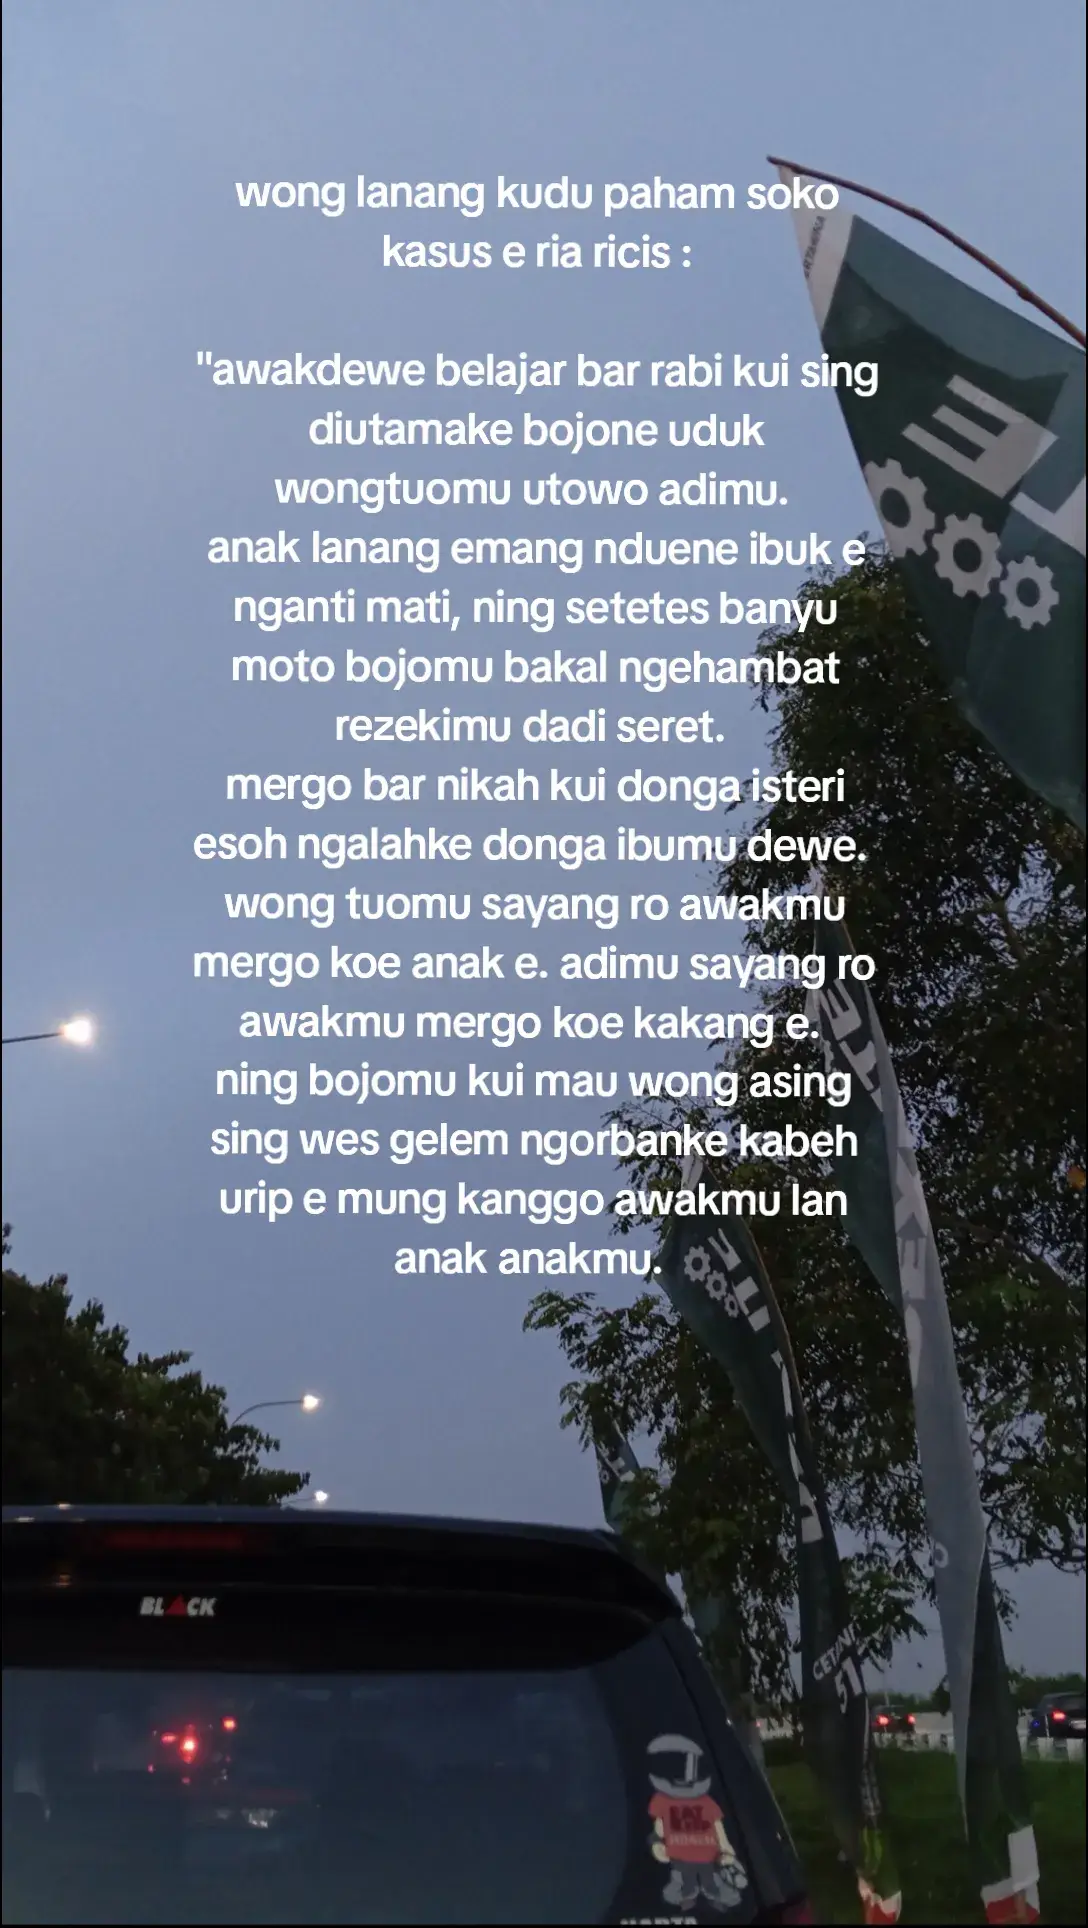 tulung wong lanang di woco.. #stories #storijowo #Pride @riaricis @teukuryantr 